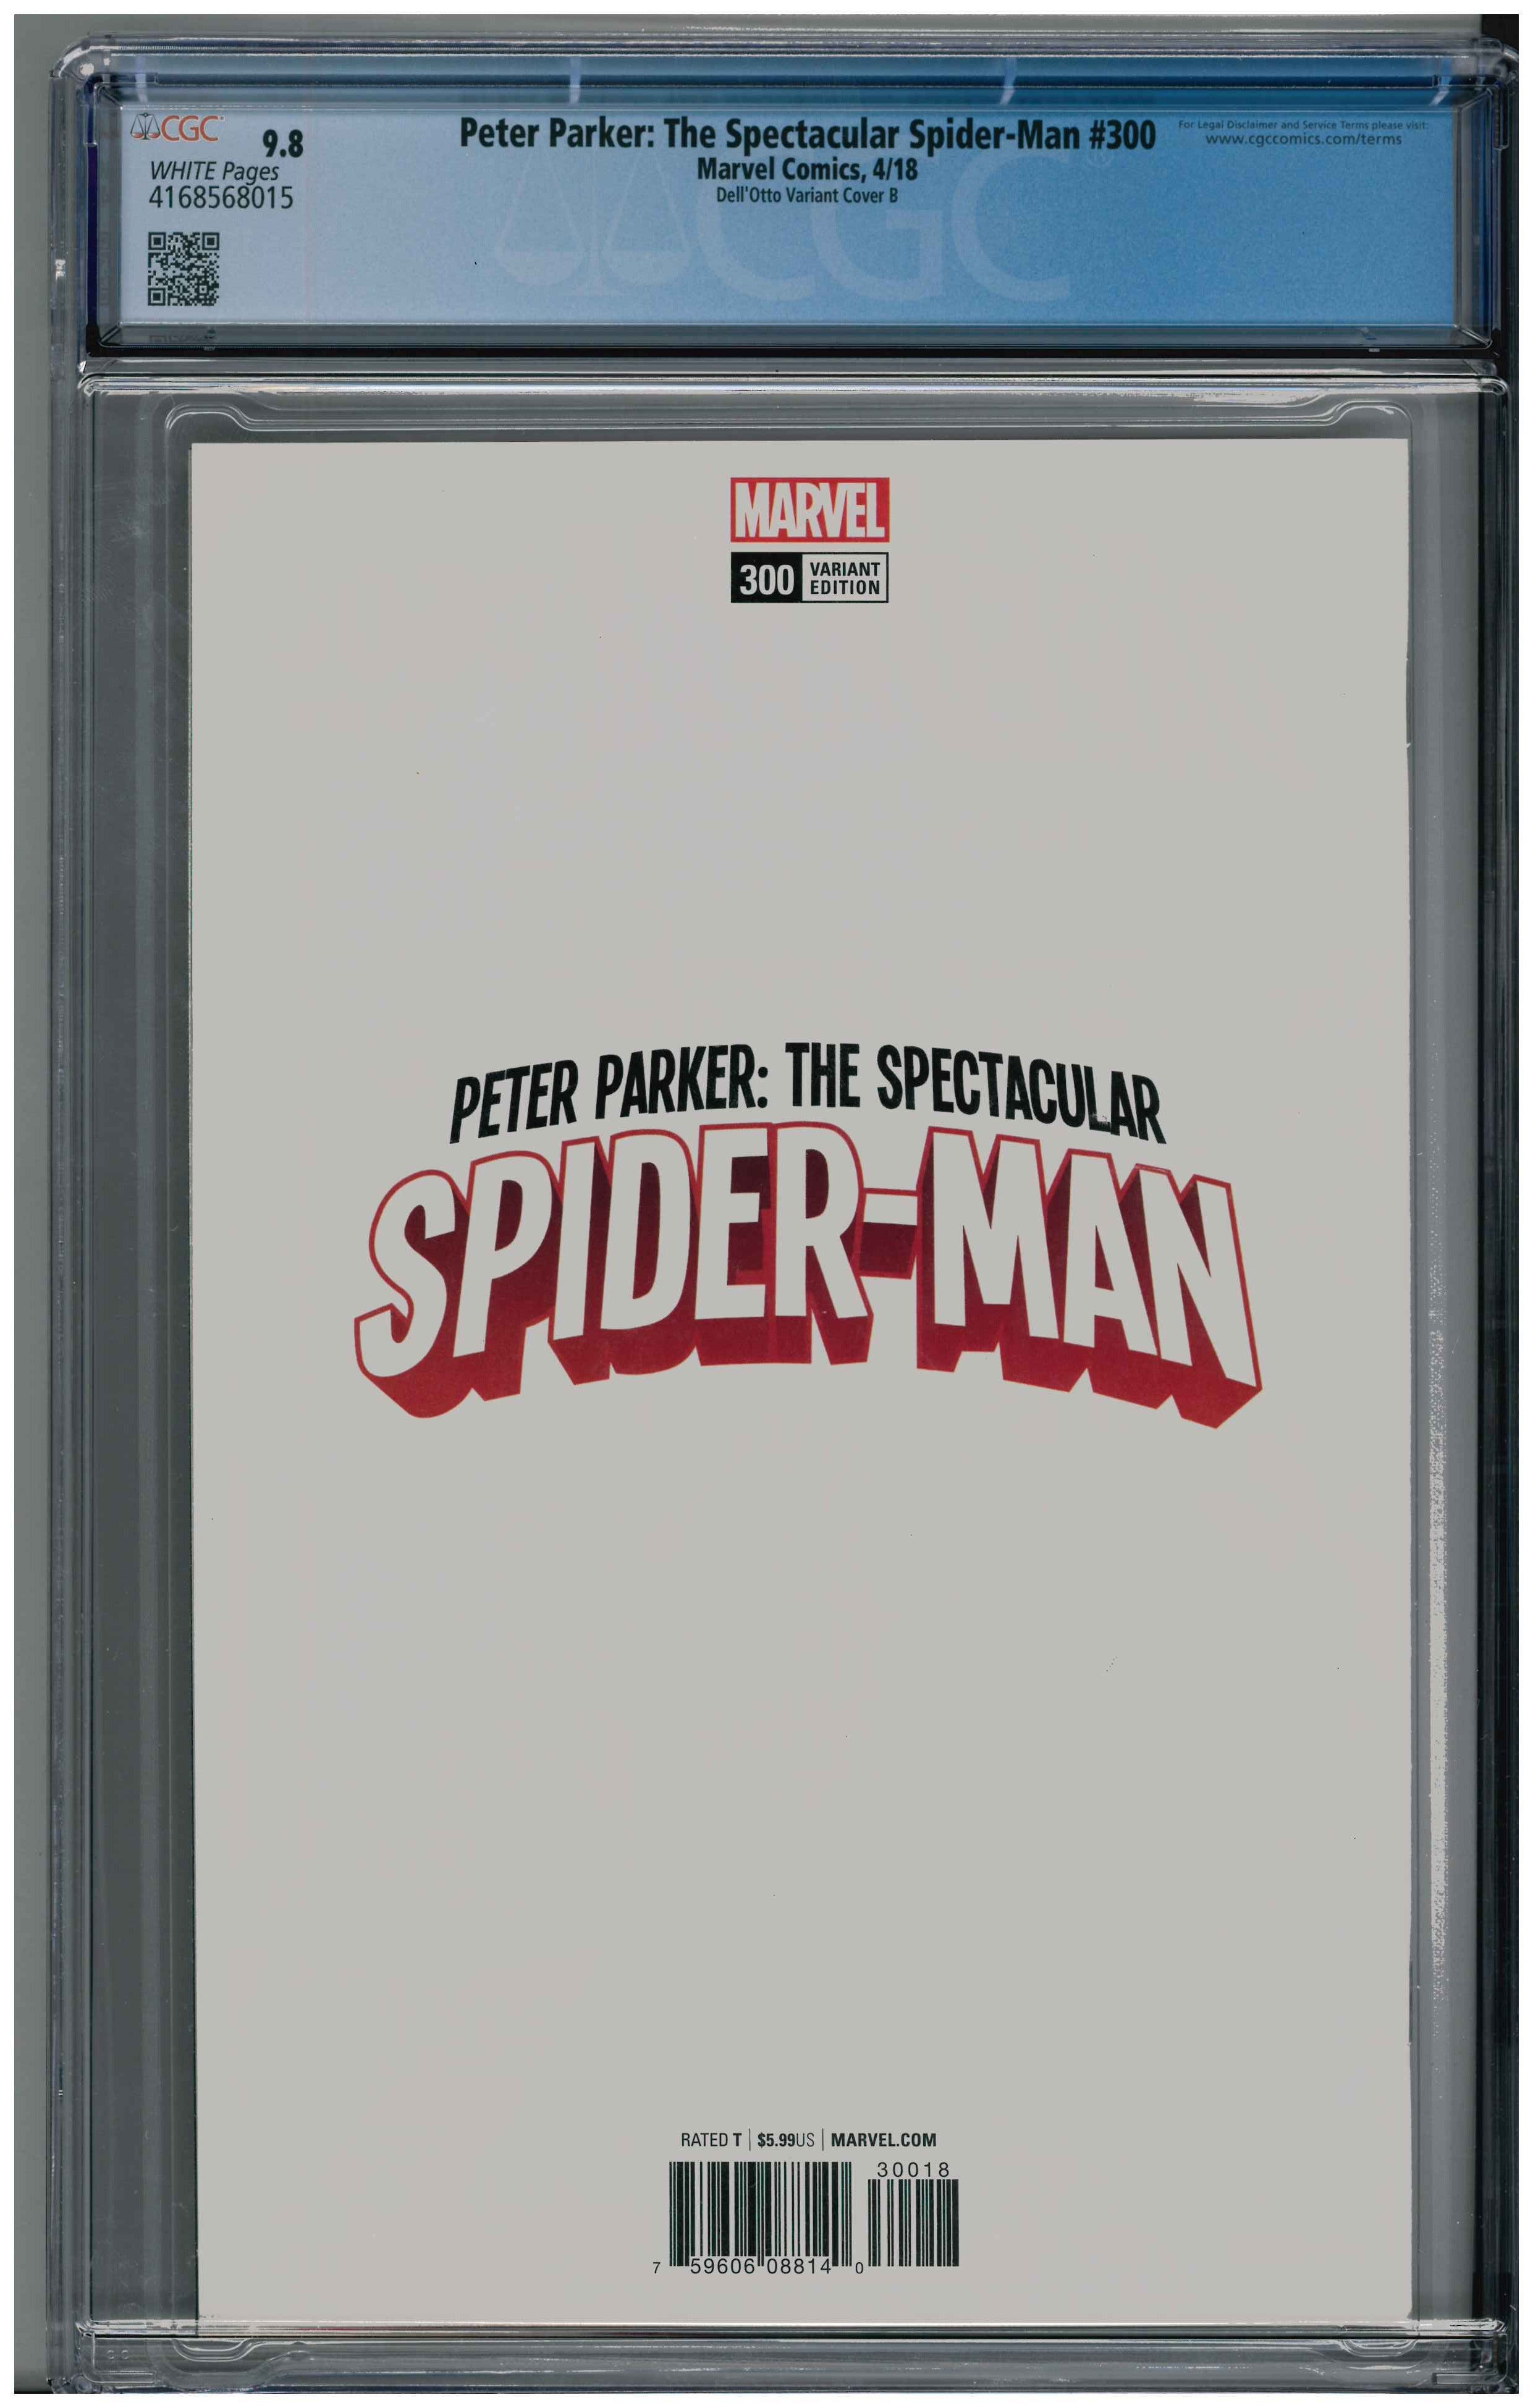 Peter Parker: The Spectacular Spider-Man #300 backside